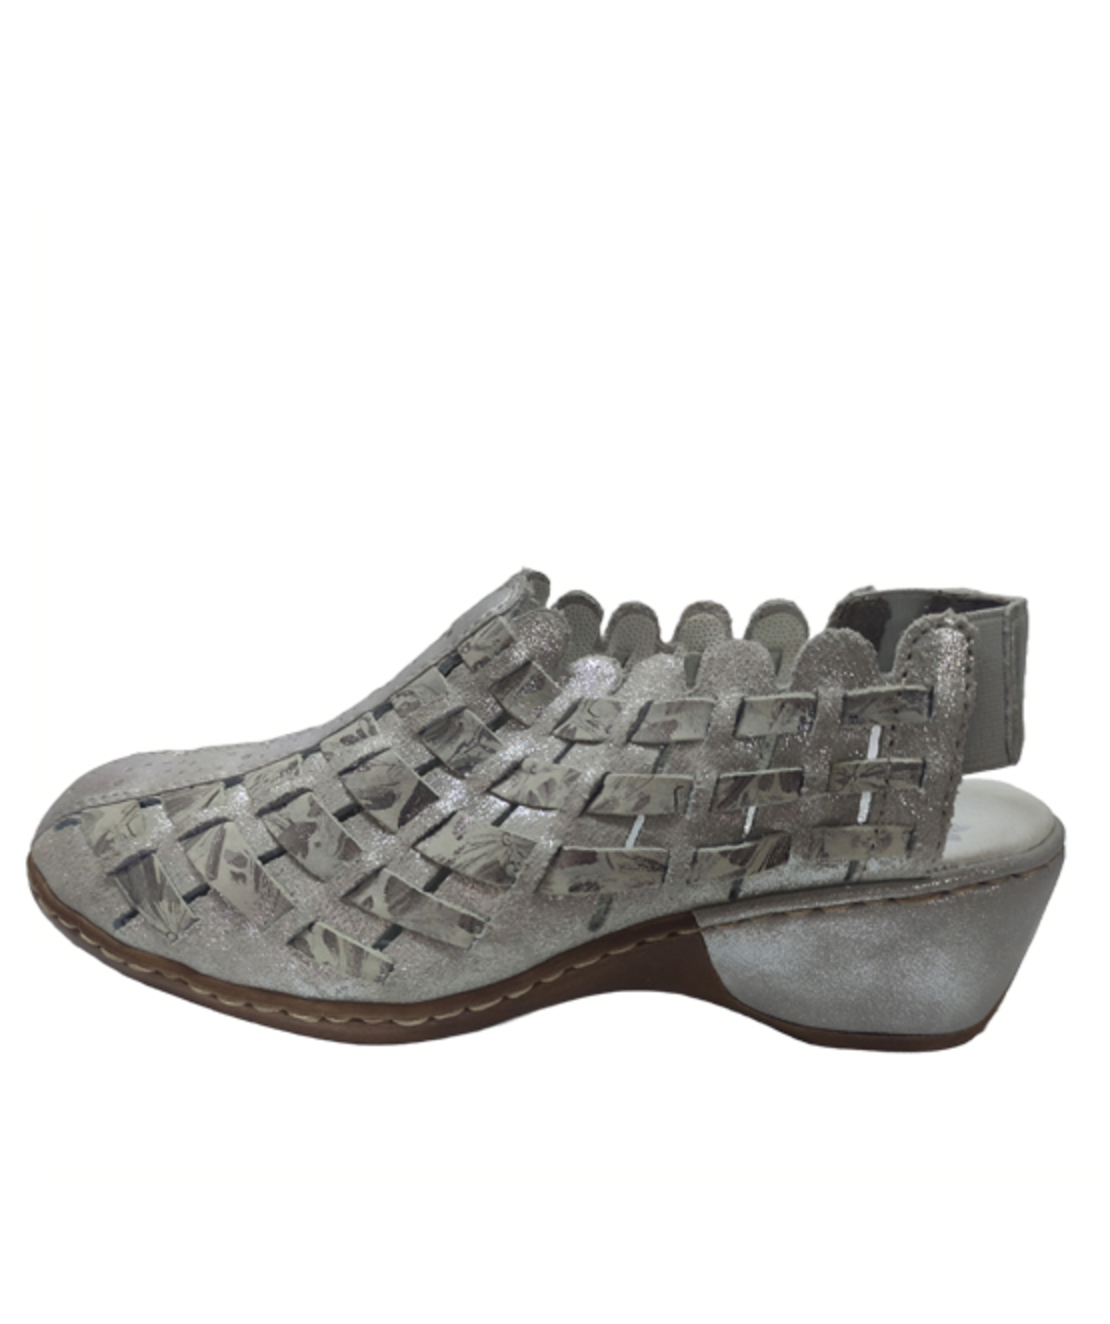 Ricker Sandals - 47156-40 - Women